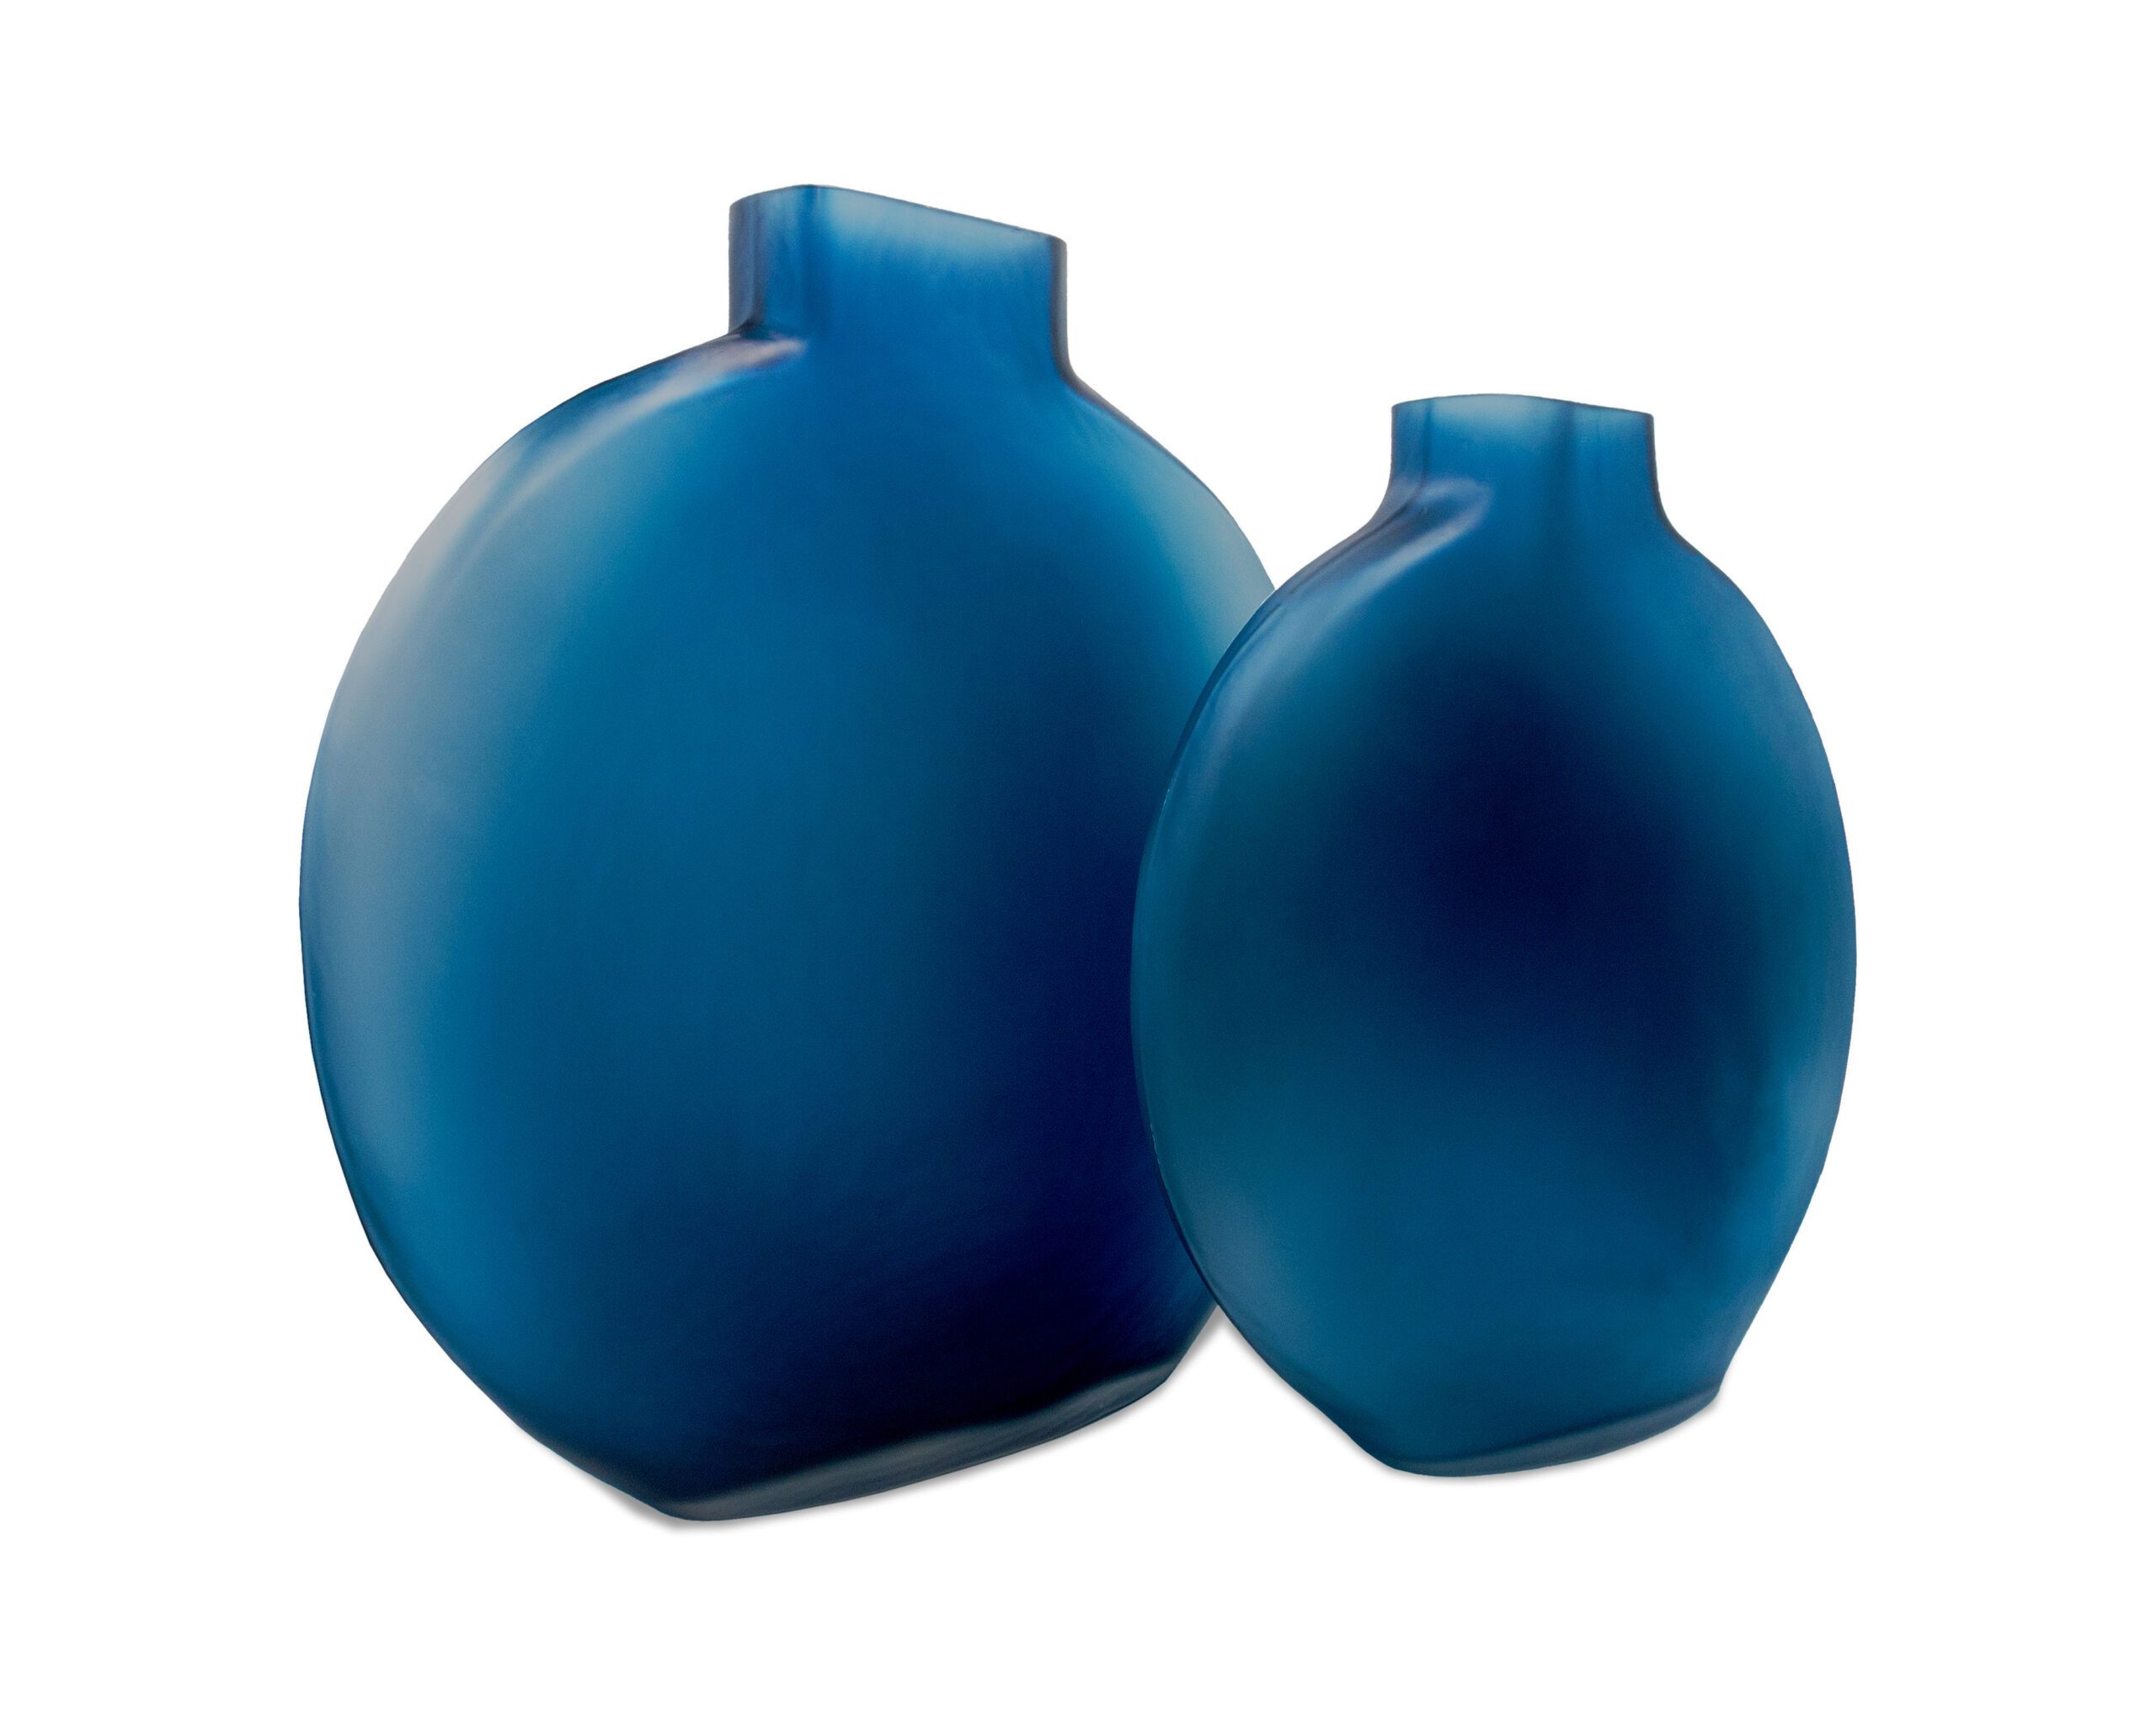 LE019-VS-059_LE019-VS-060_L&E__Ocean Blue Glass Vase_Small_Large_4000 x 3200_2